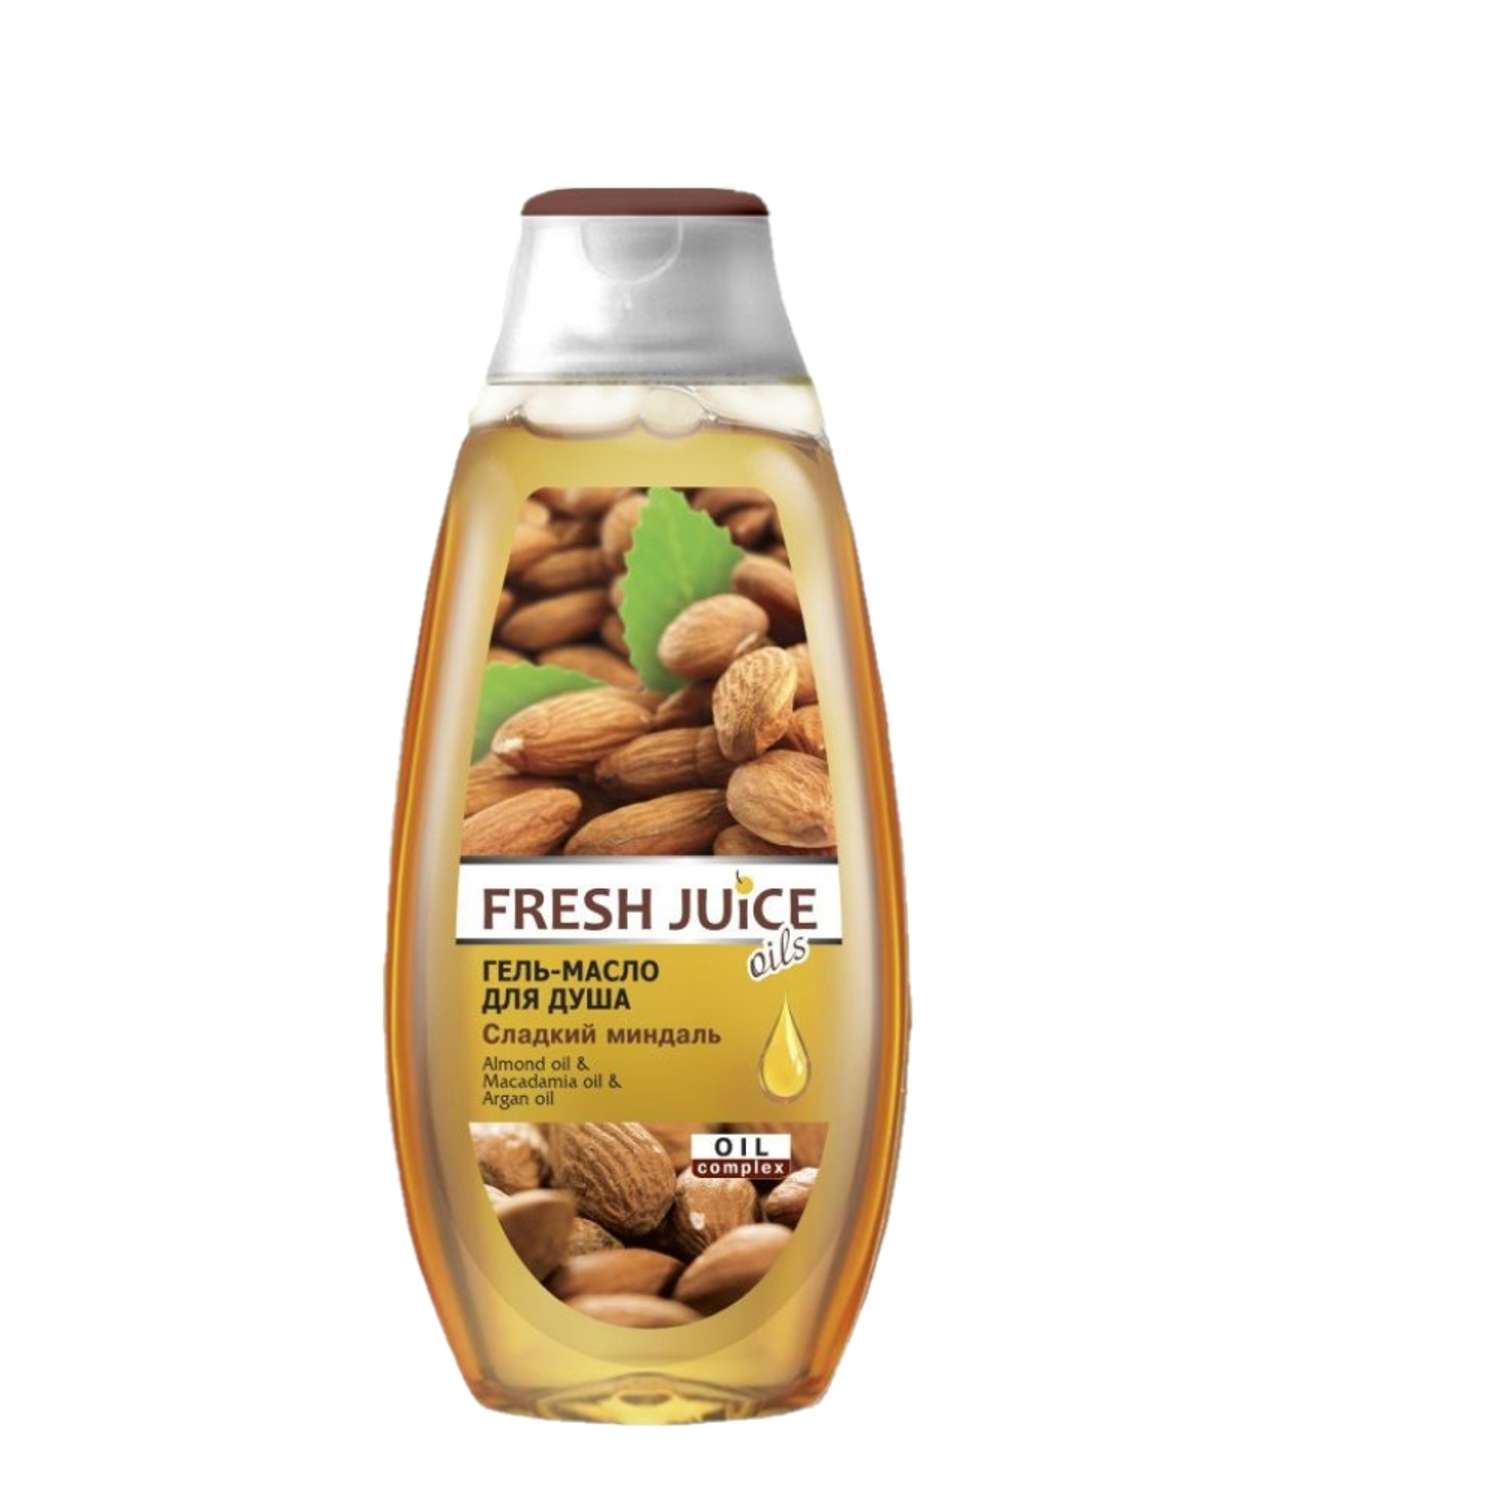 Масло для душа миндальное. Fresh Juice гель-масло для душа Sweet Almond 400мл. Fresh Juice крем-гель для душа Sweet Almond 400 мл. Фреш Джус гель для душа 400мл. "Fresh Juice"гель для душа "Lemongrass & Vanilla", 750 мл.